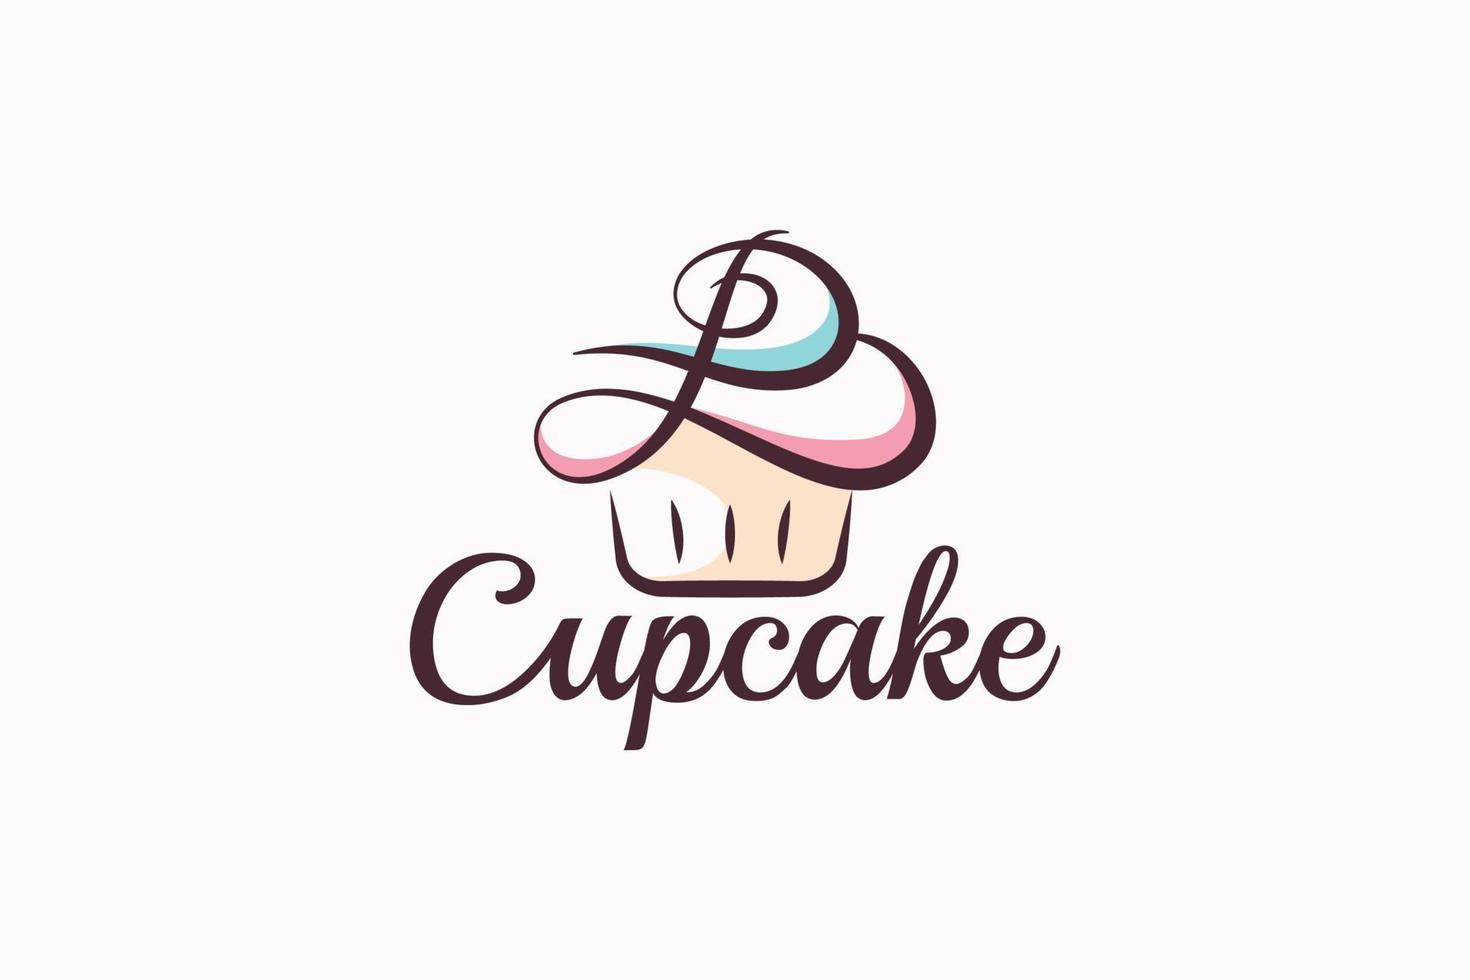 b petit gâteau logo avec une combinaison de styliste petit gâteau et lettre b pour tout entreprise, surtout pour boulangeries, pâtisseries, café, etc. vecteur